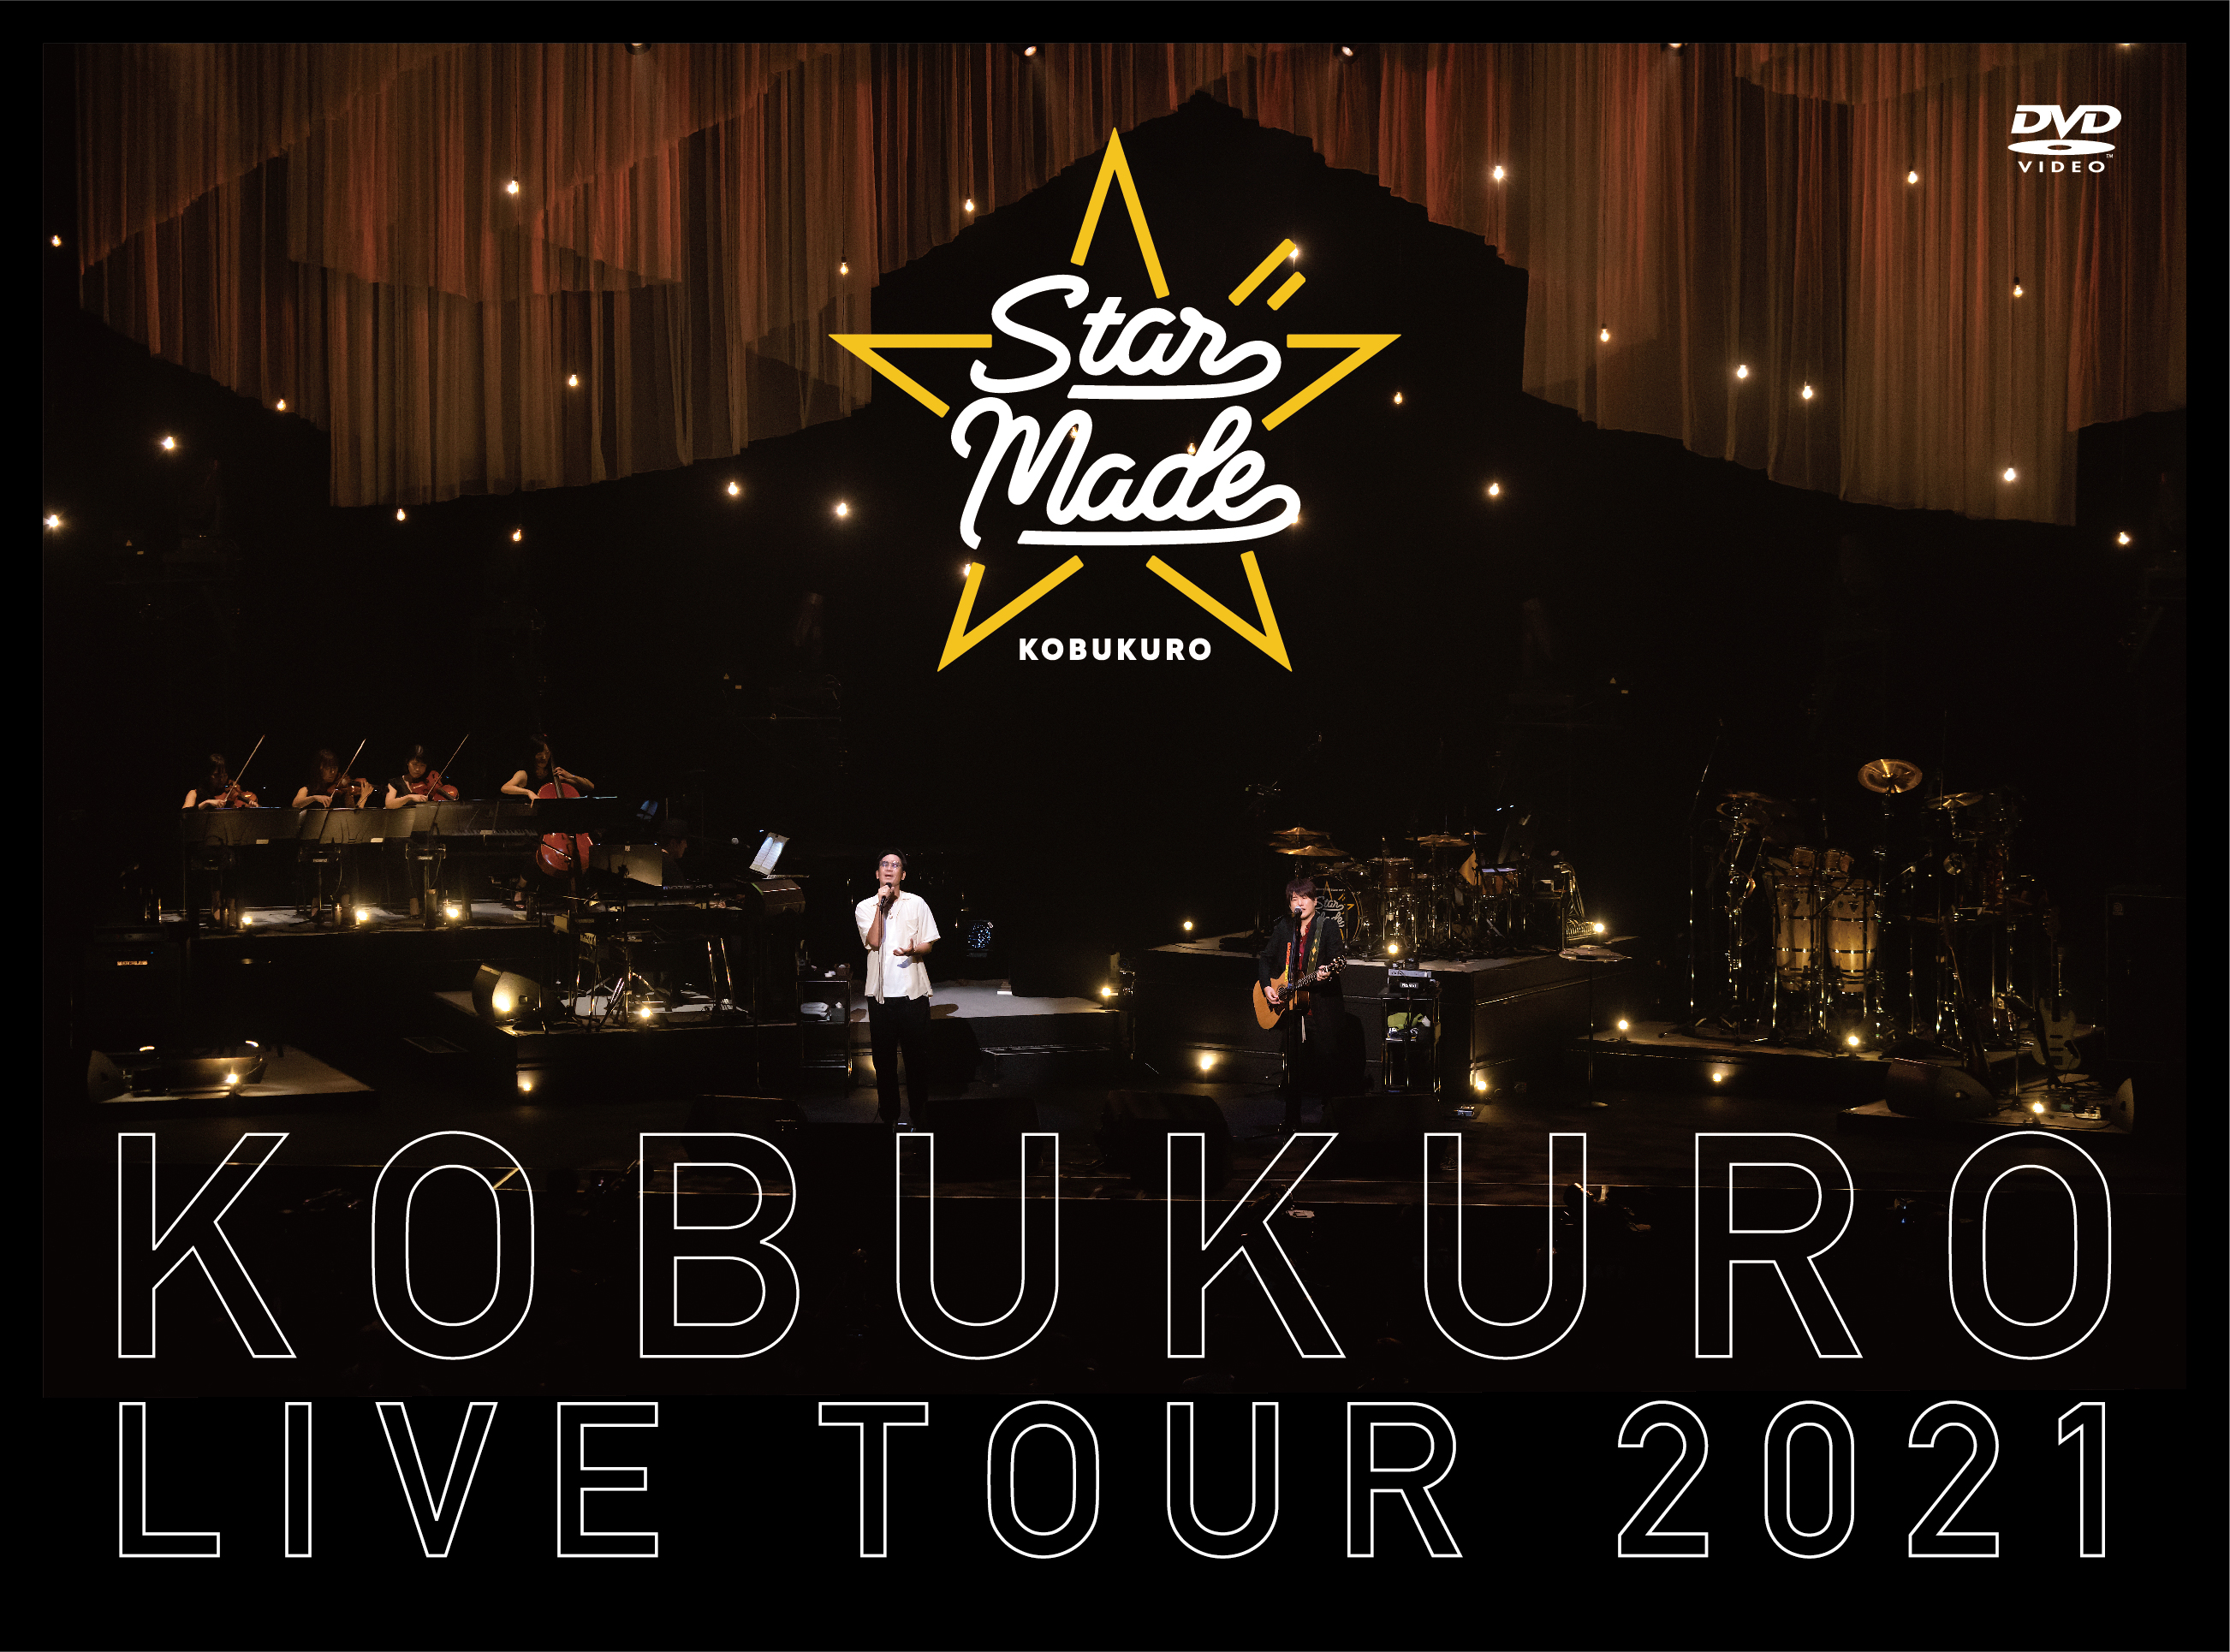 KOBUKURO LIVE TOUR 2021 "Star Made" at 東京ガーデンシアター（初回限定盤 DVD）